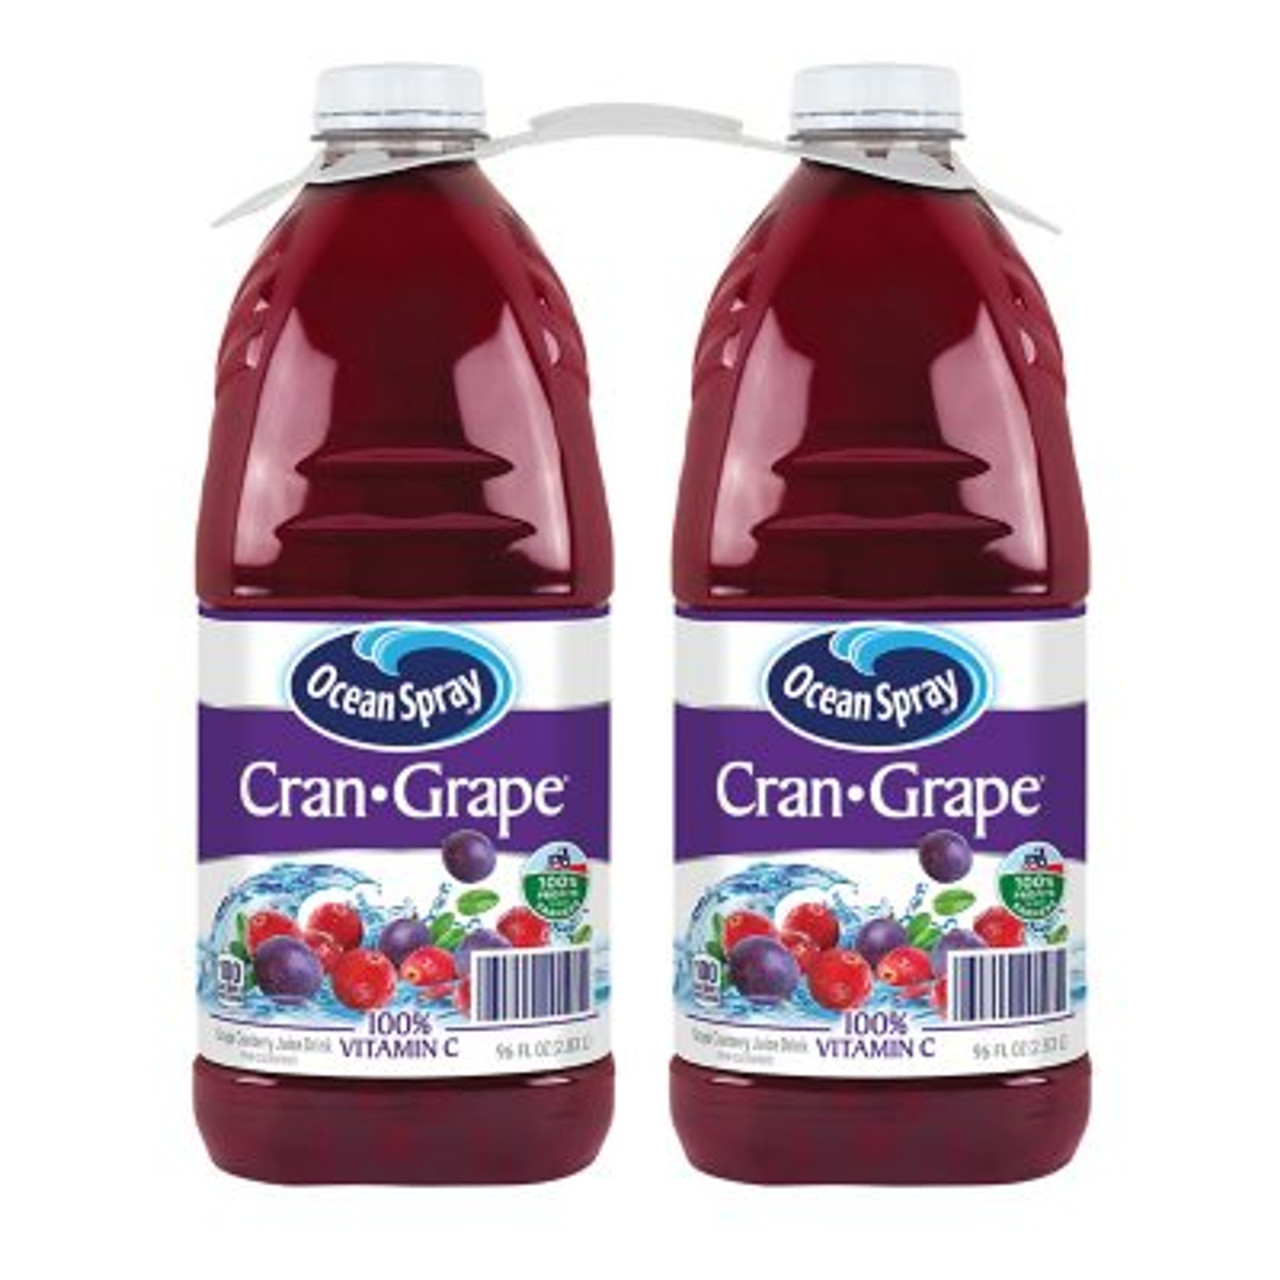 Ocean Spray Cran-Grape Juice Drink (96oz / 2pk) - *Pre-Order